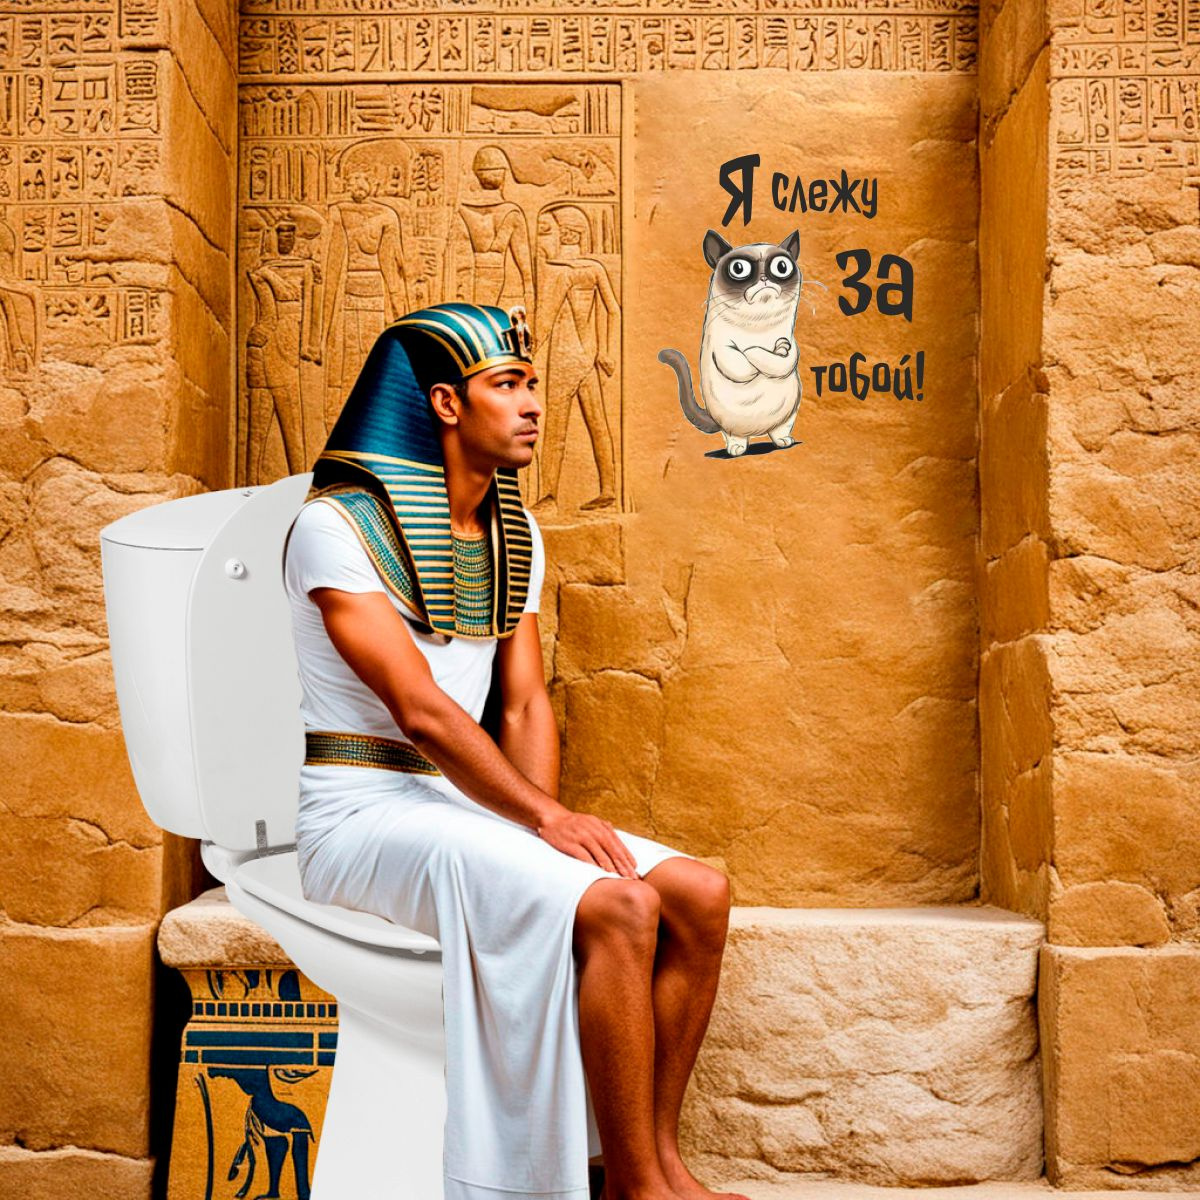 Во времена Древнего Египта коты пользовались уважением фараонов и других важных особ. Эти животные покоряют своим грациозным характером, поэтому многие сегодня выбирают наклейки с котами и кошками.